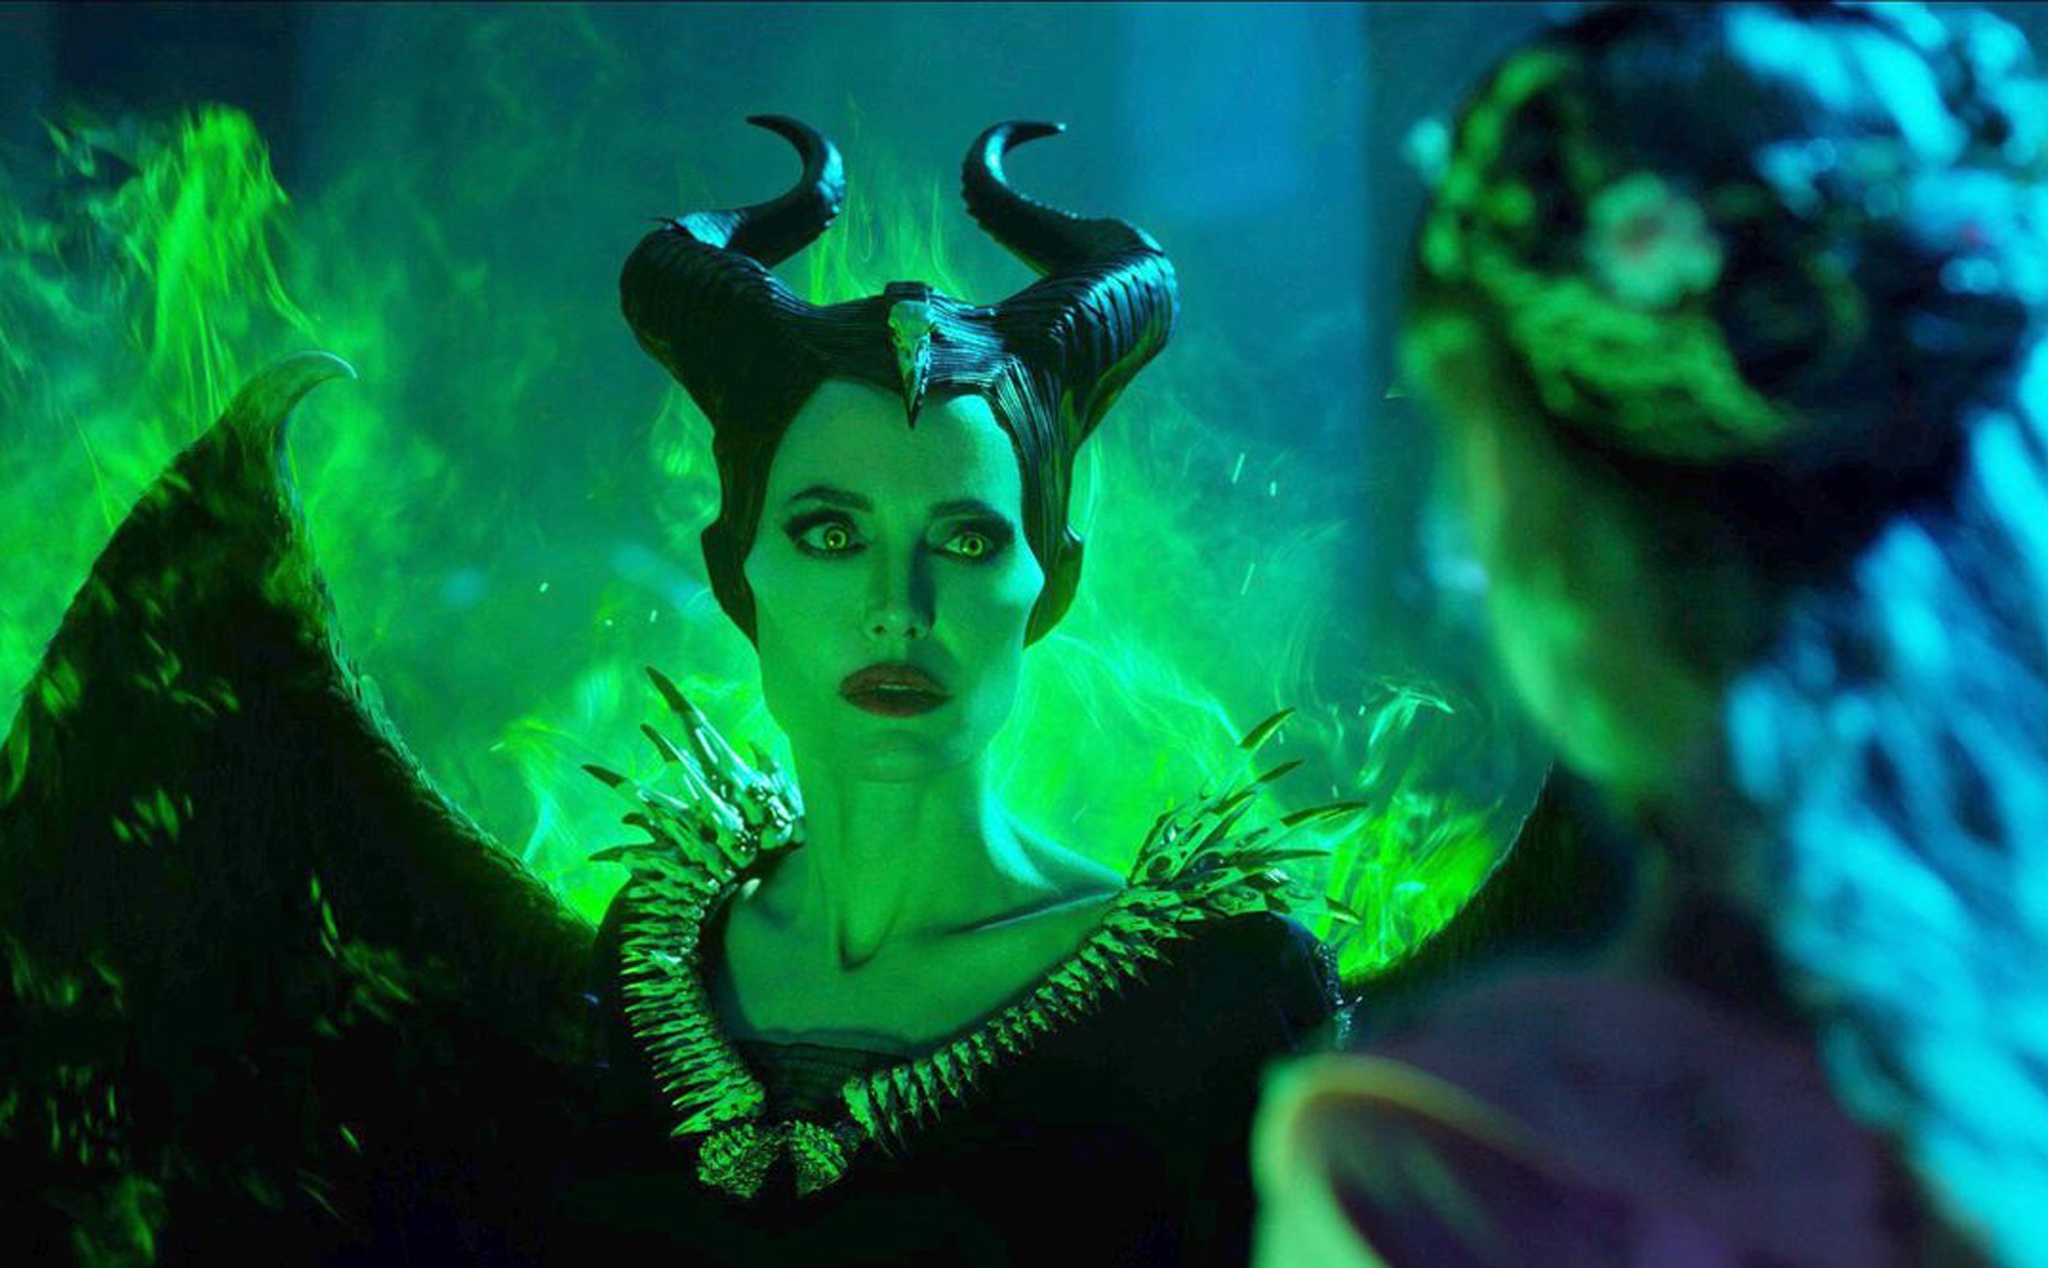 Tổng hợp phim đang và sắp chiếu rạp: Maleficent, The Addams Family, Bắc Kim Thang,...